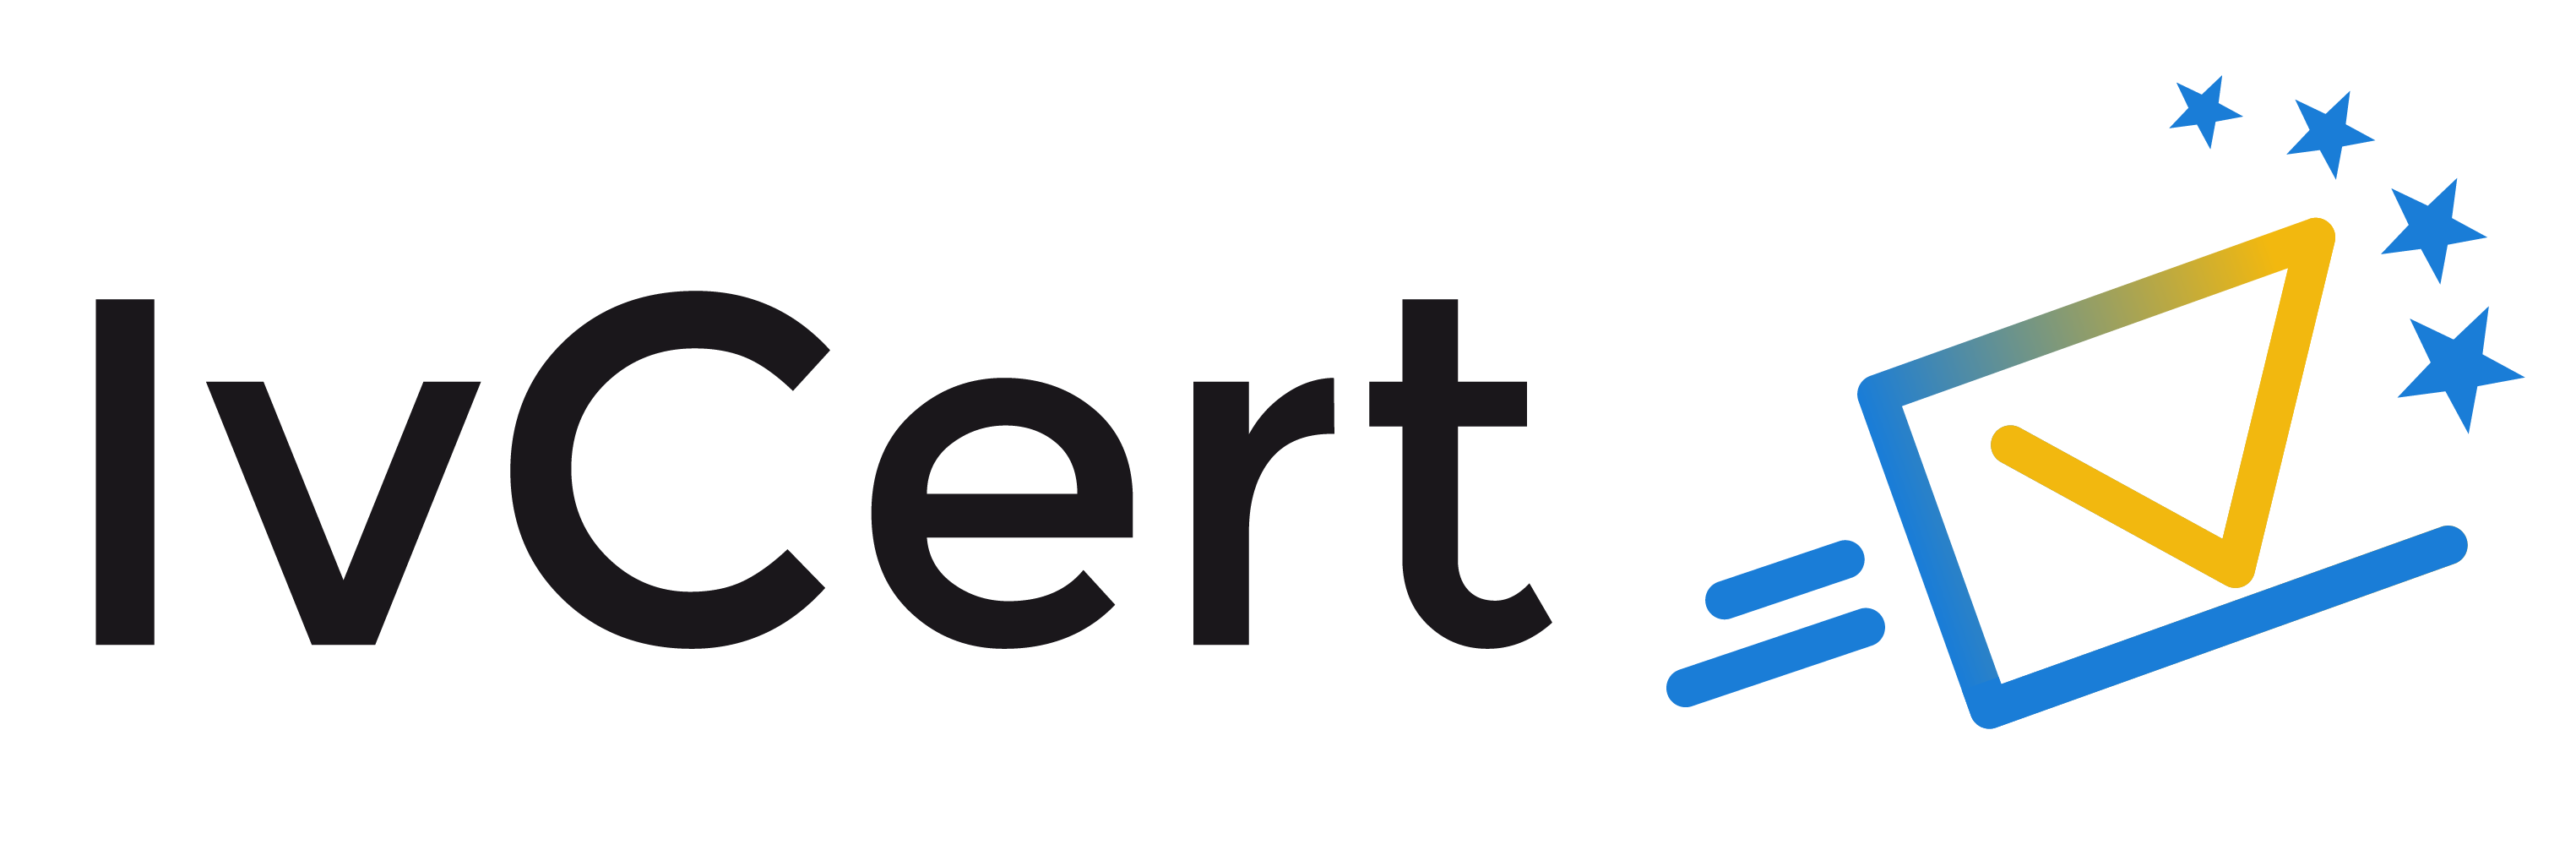 Ivcert plataforma de firma electrónica y envío certificado